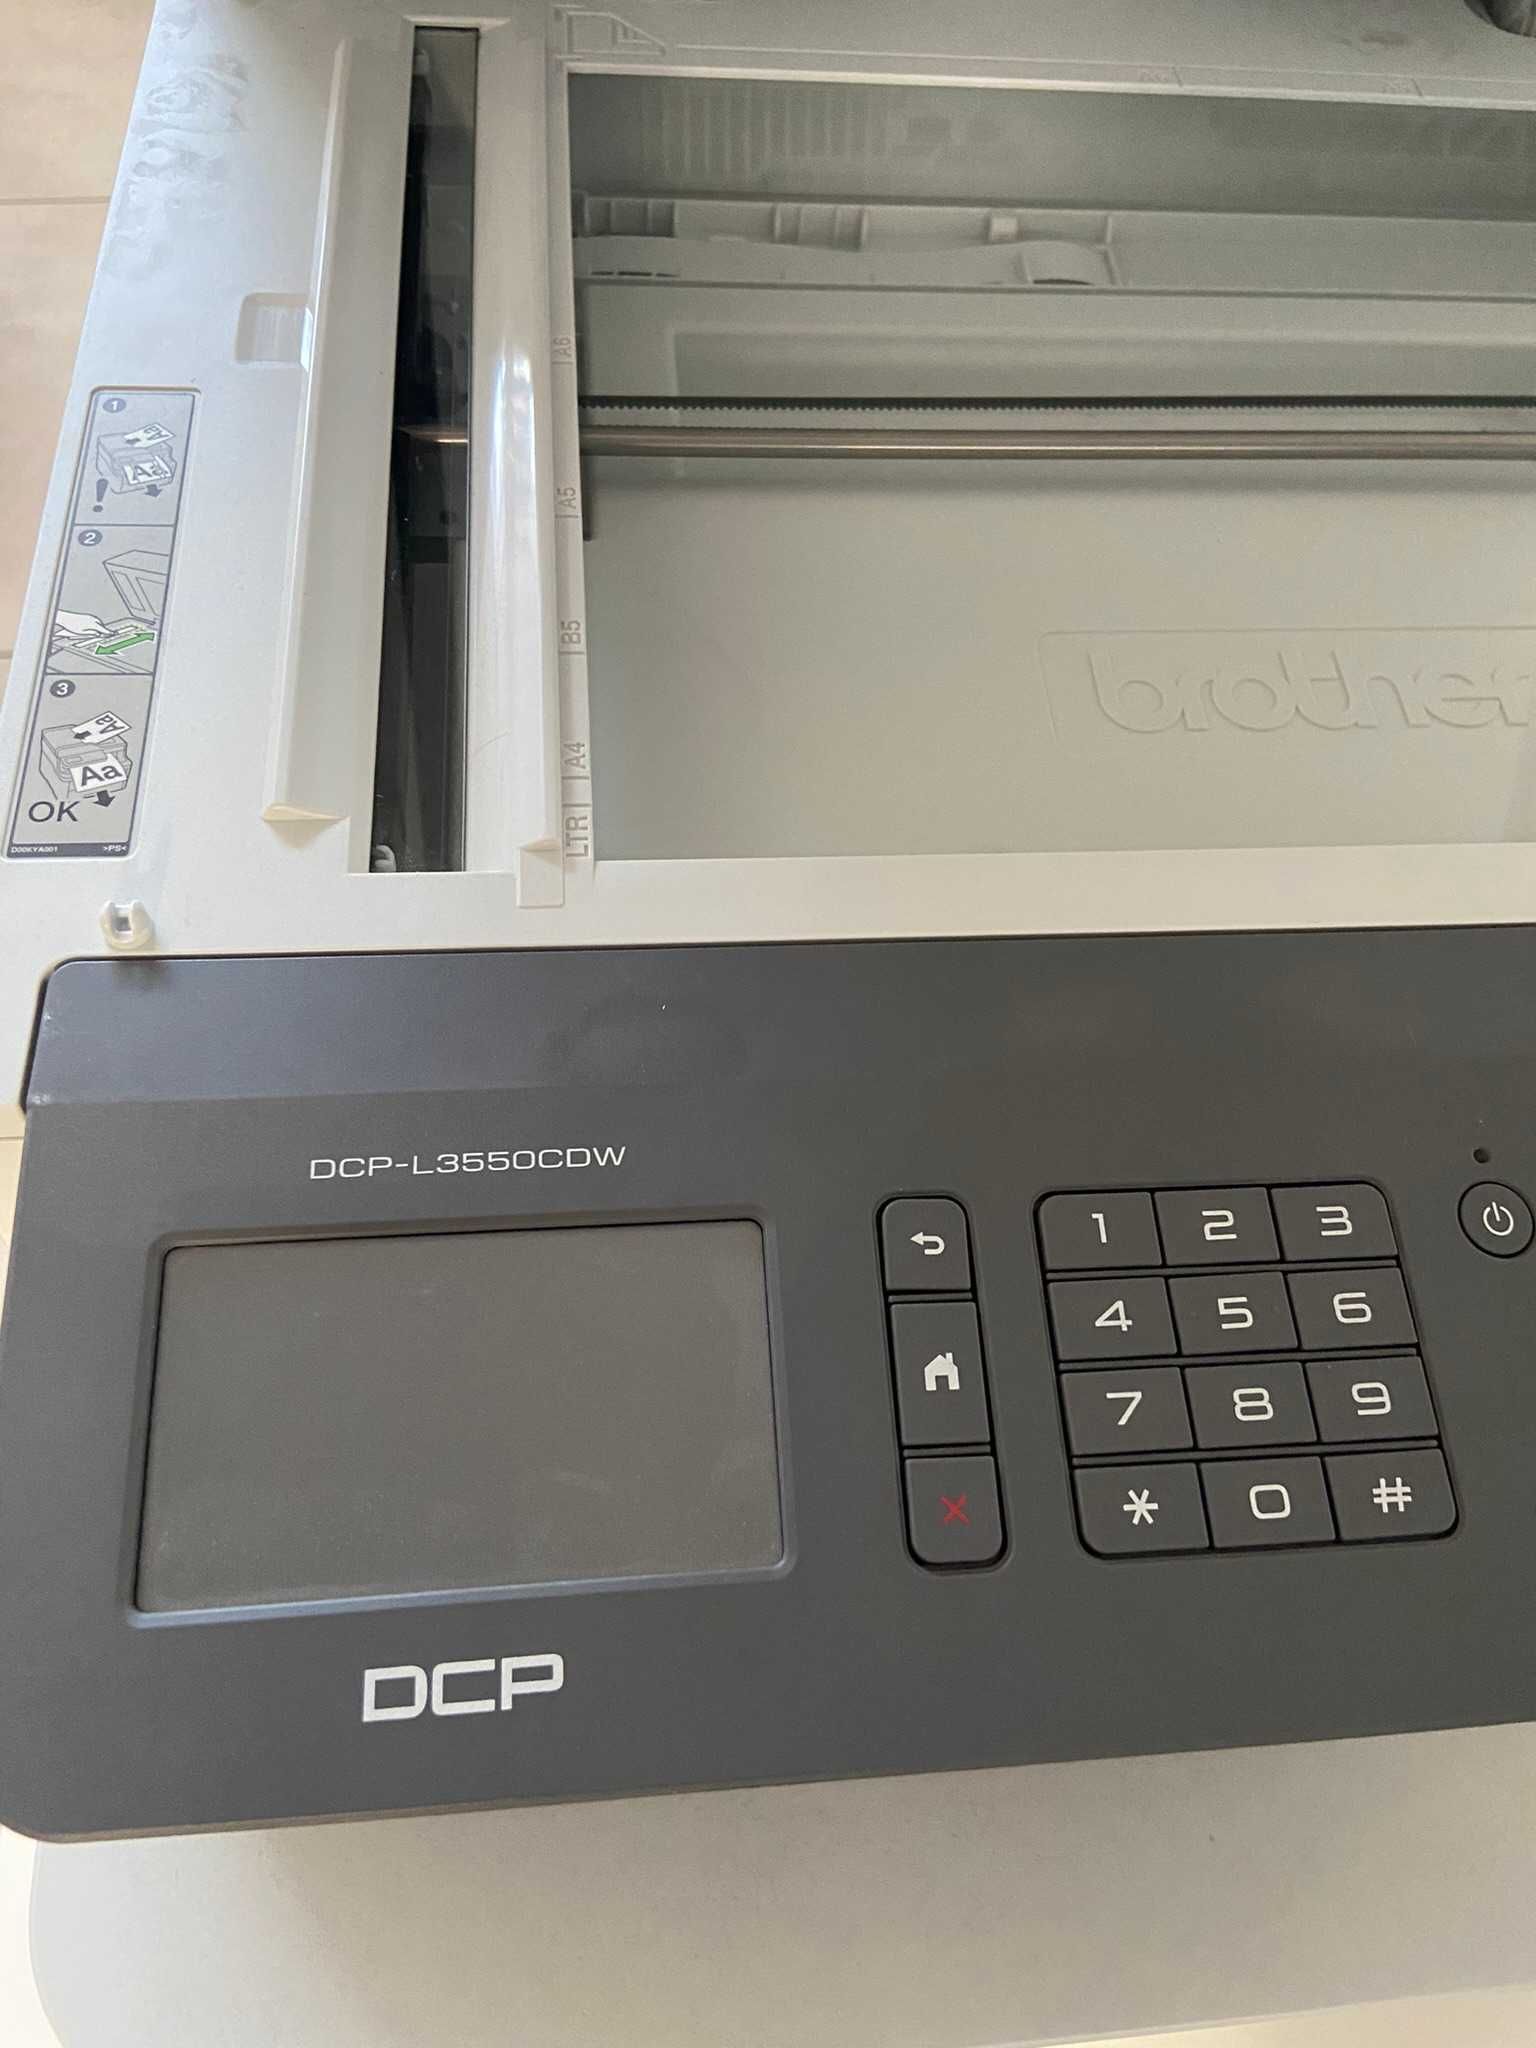 drukarka laserowa (kolorowa), duplex, Brother DCP-L3550CDW